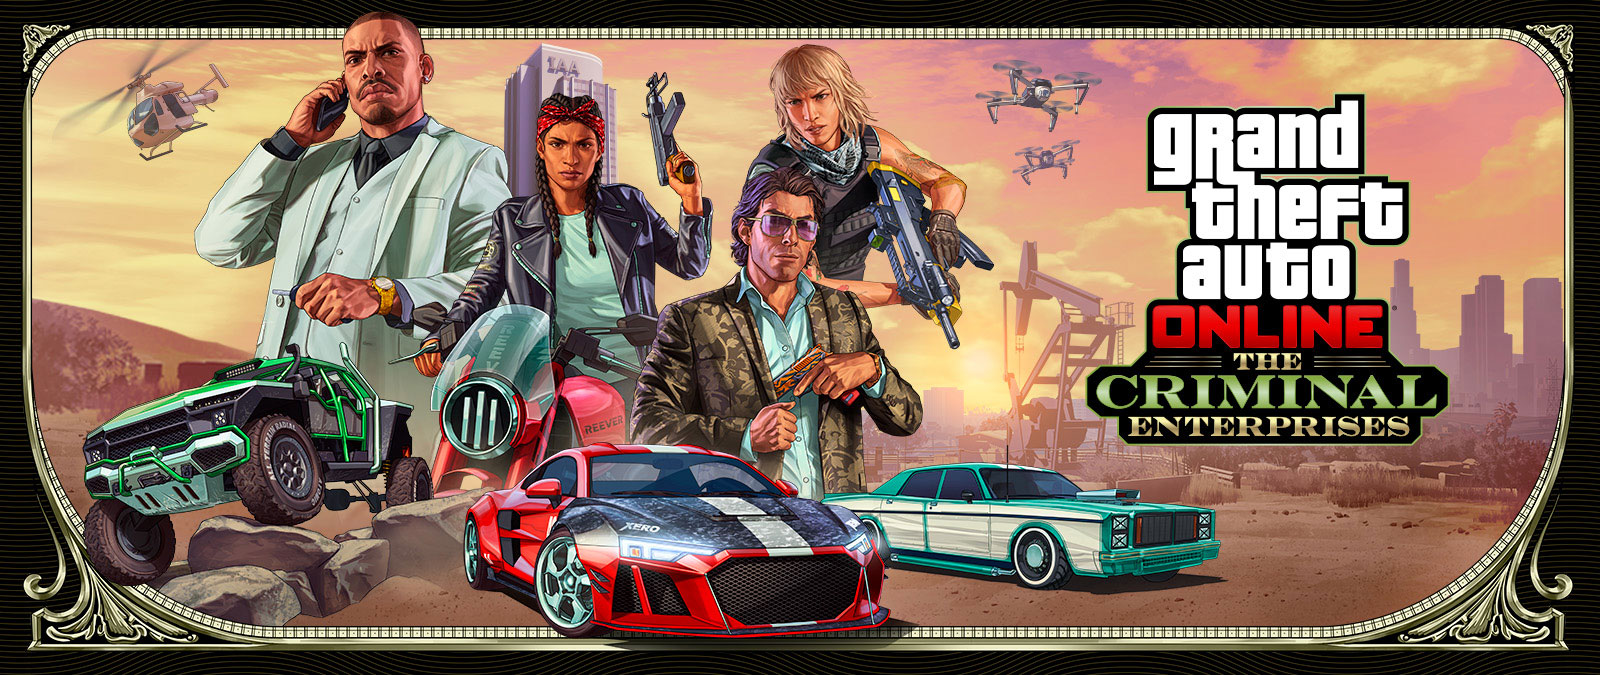 Grand Theft Auto Online: The Criminal Enterprises, Tres elegantes vehículos corren en primer plano mientras cuatro personajes aparecen por encima.